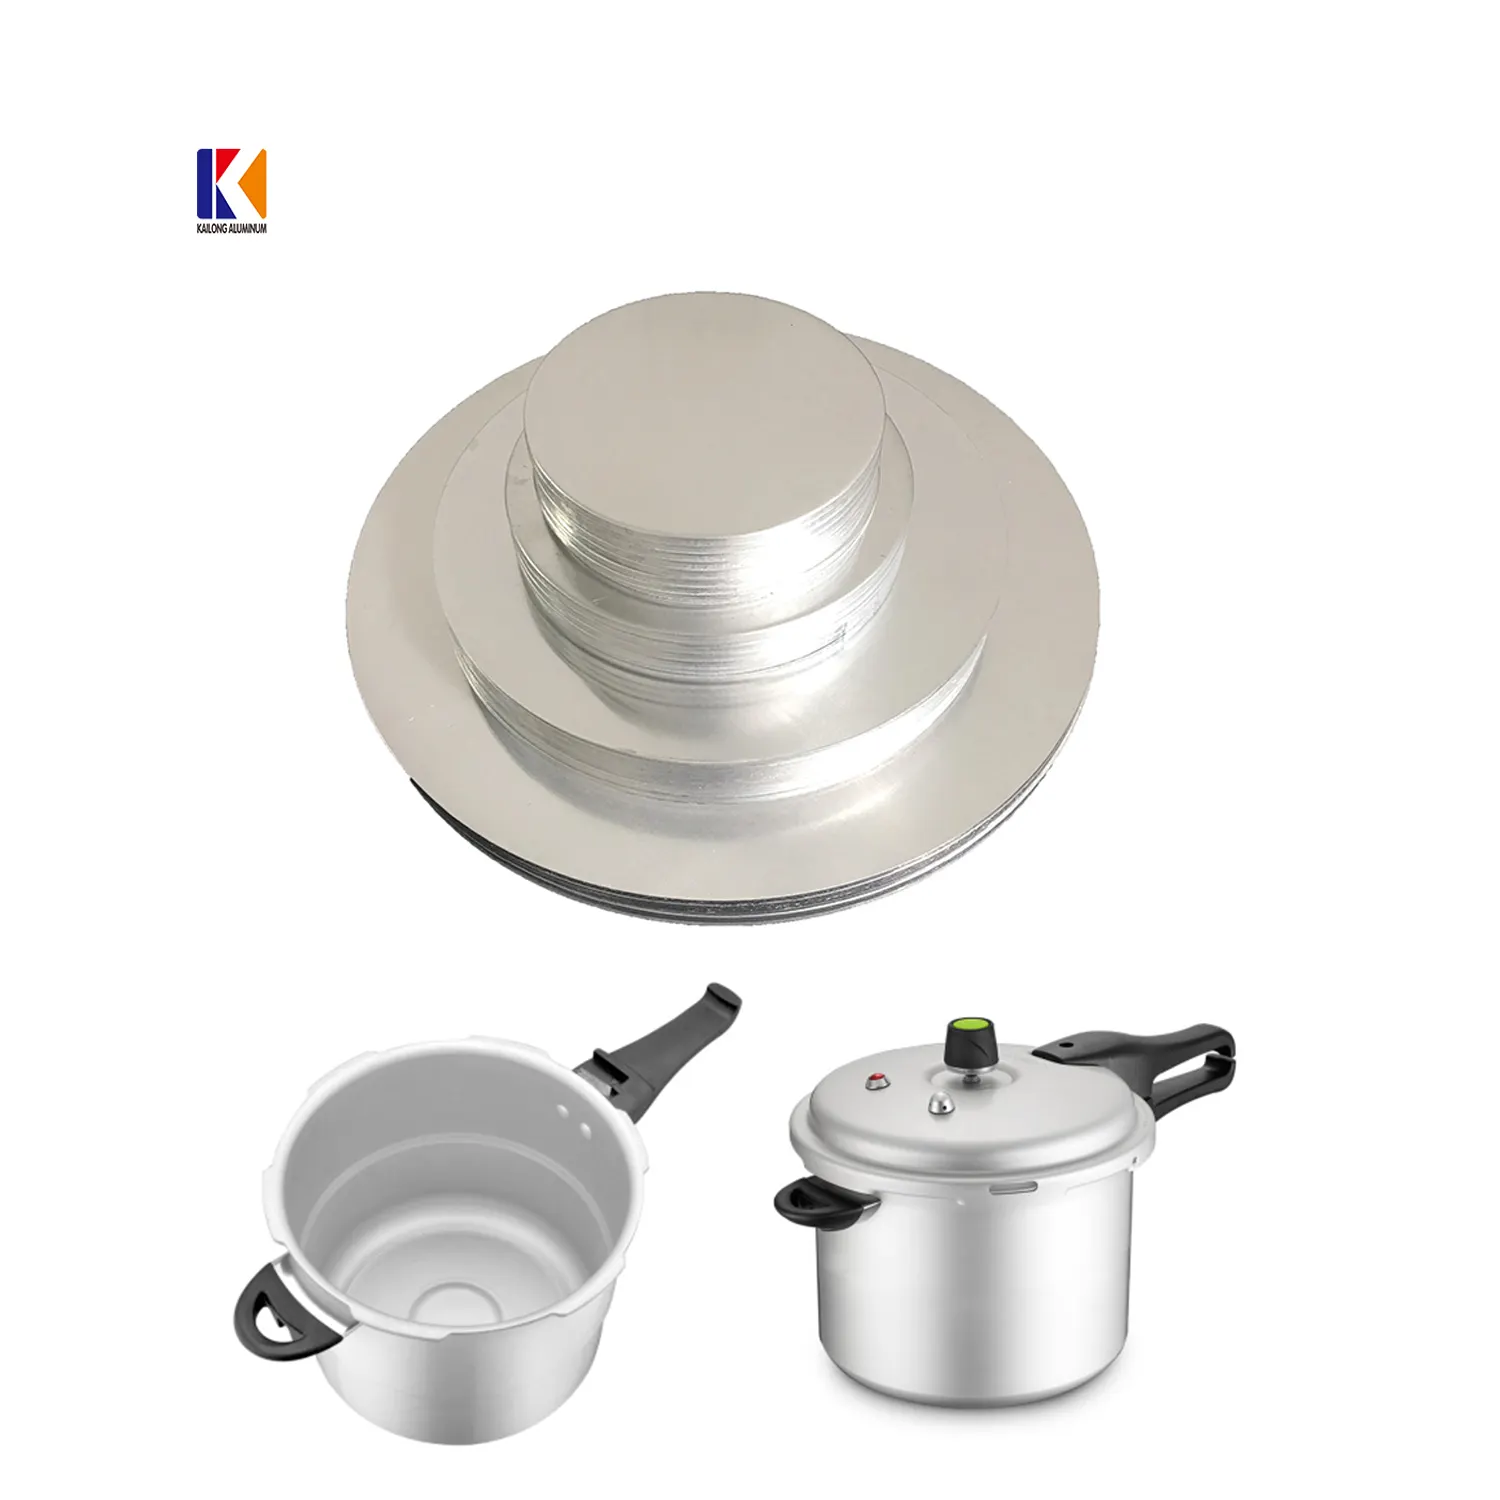 Disco de placa redonda de aluminio para cocina a presión, disco circular de aluminio para Cocina de Inducción ali export, nuevo tipo y precio competitivo